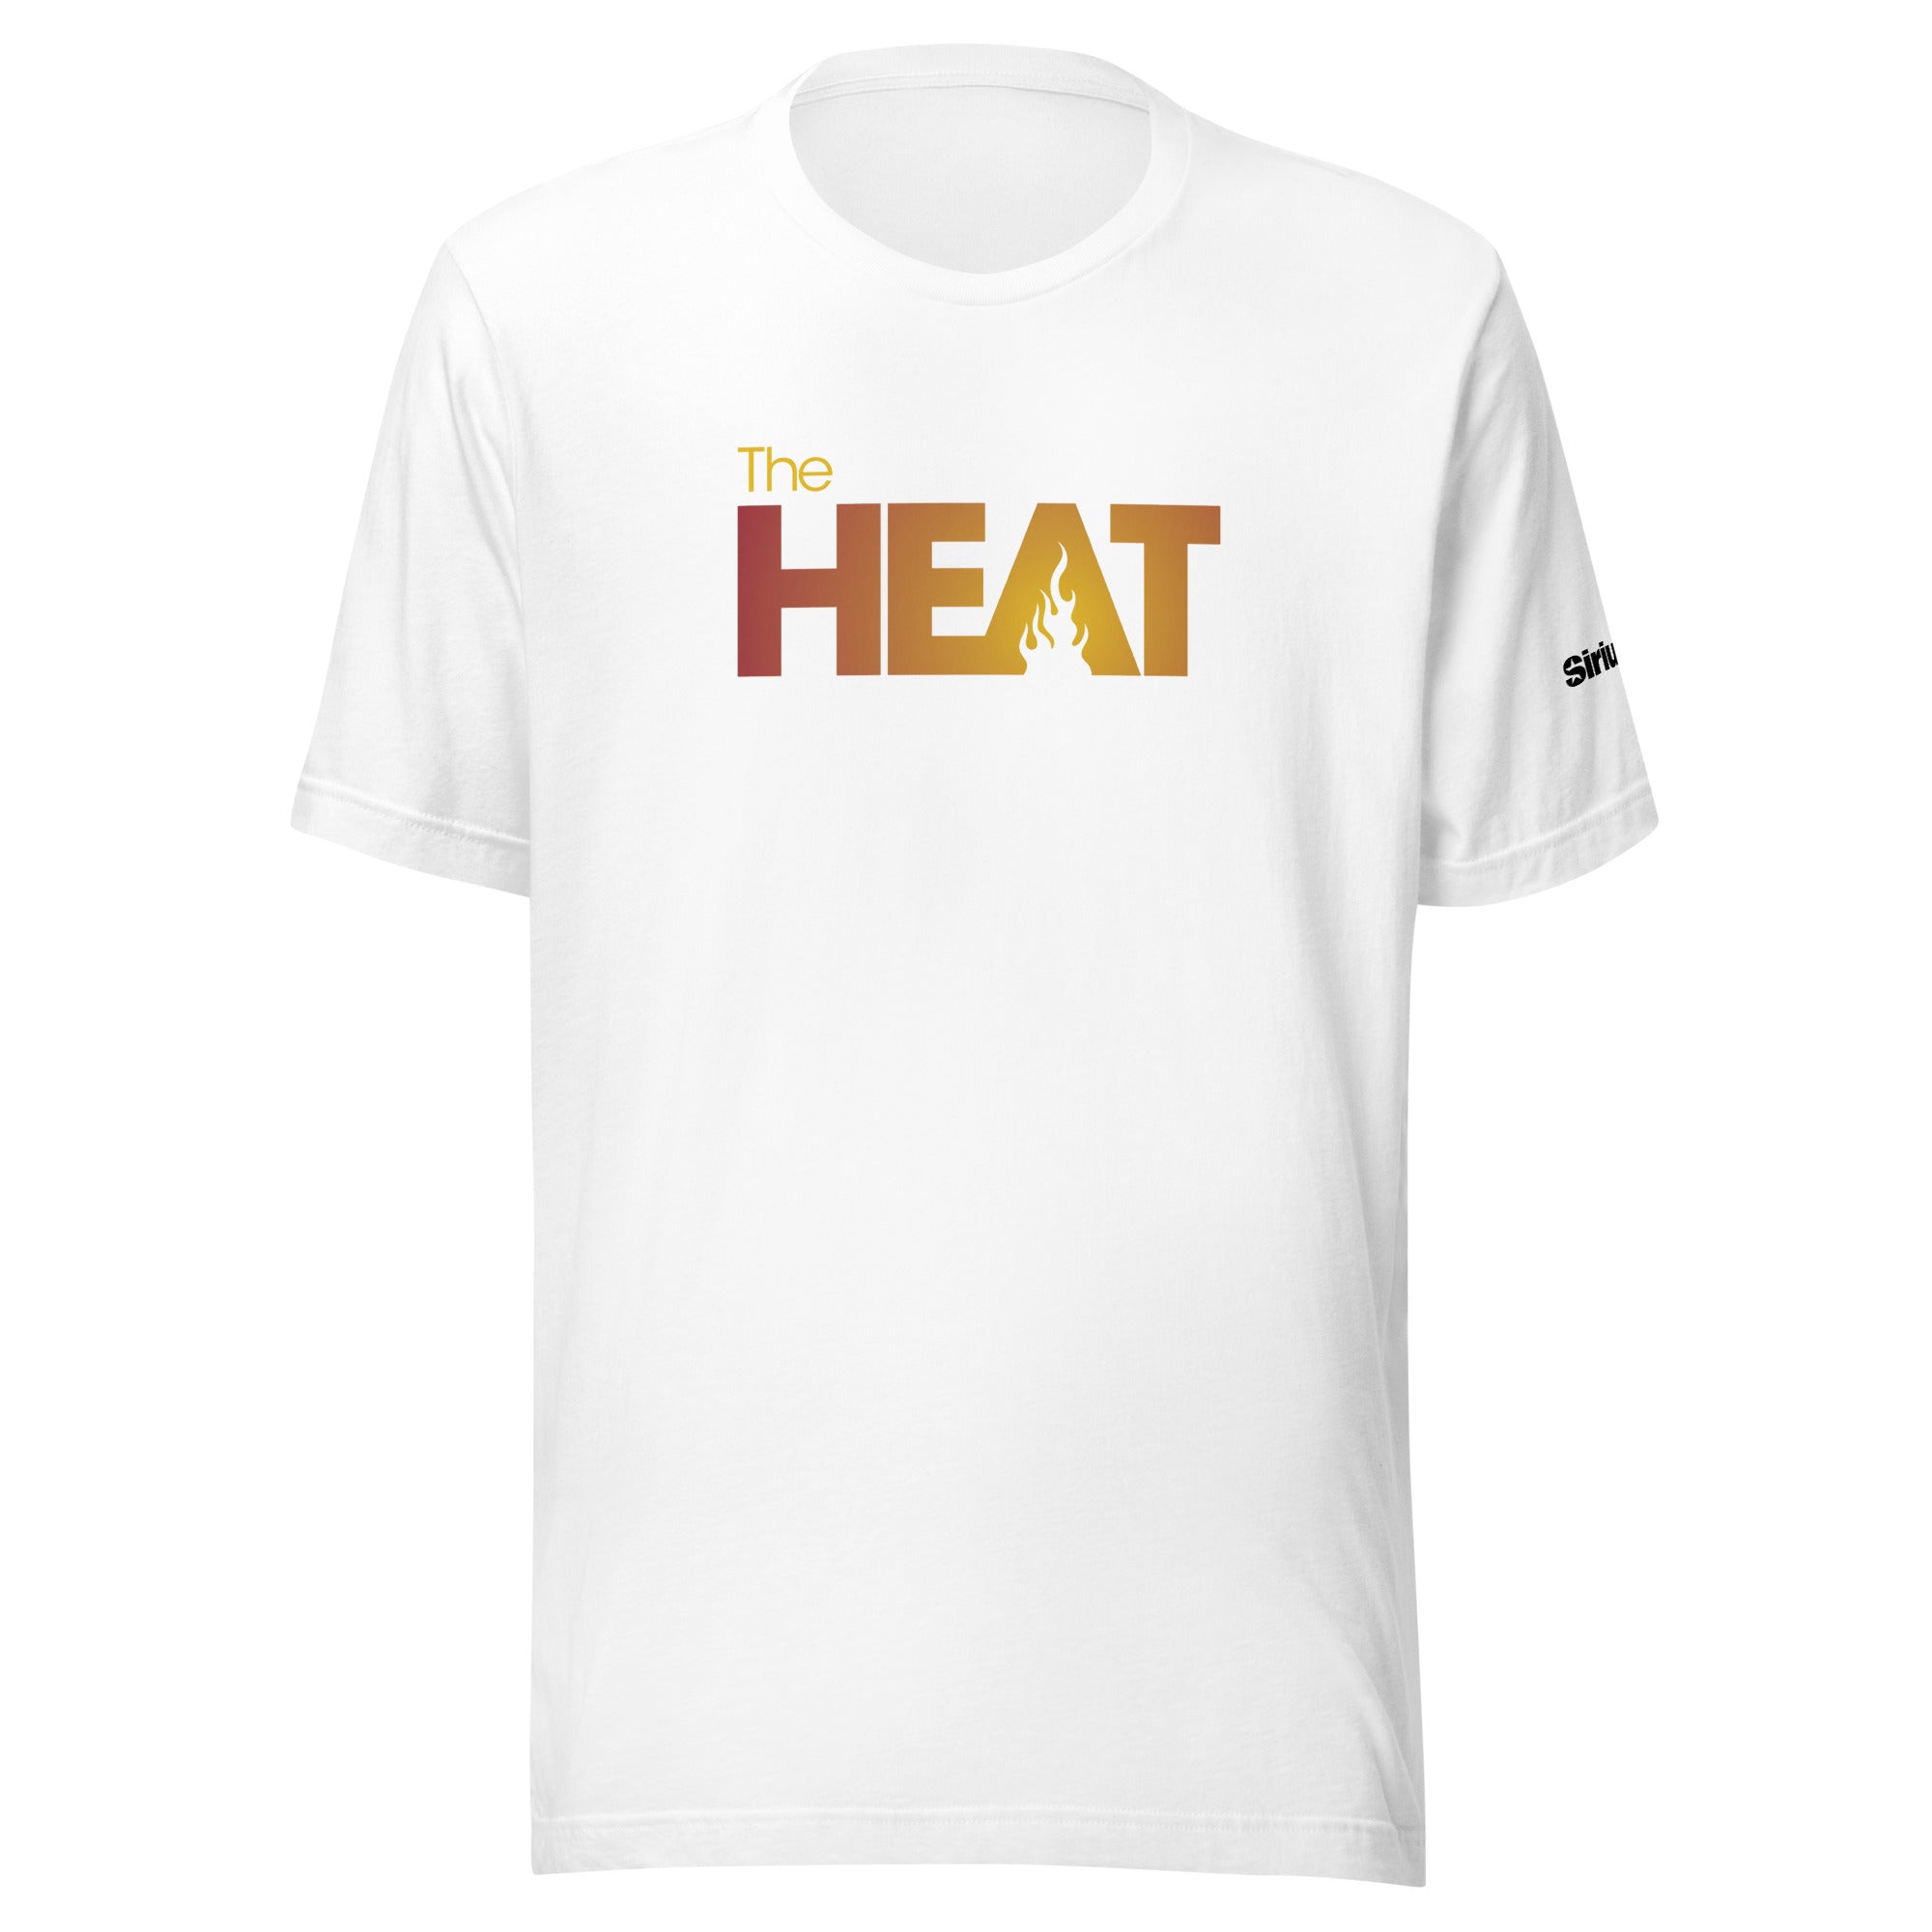 The Heat: T-shirt (White)